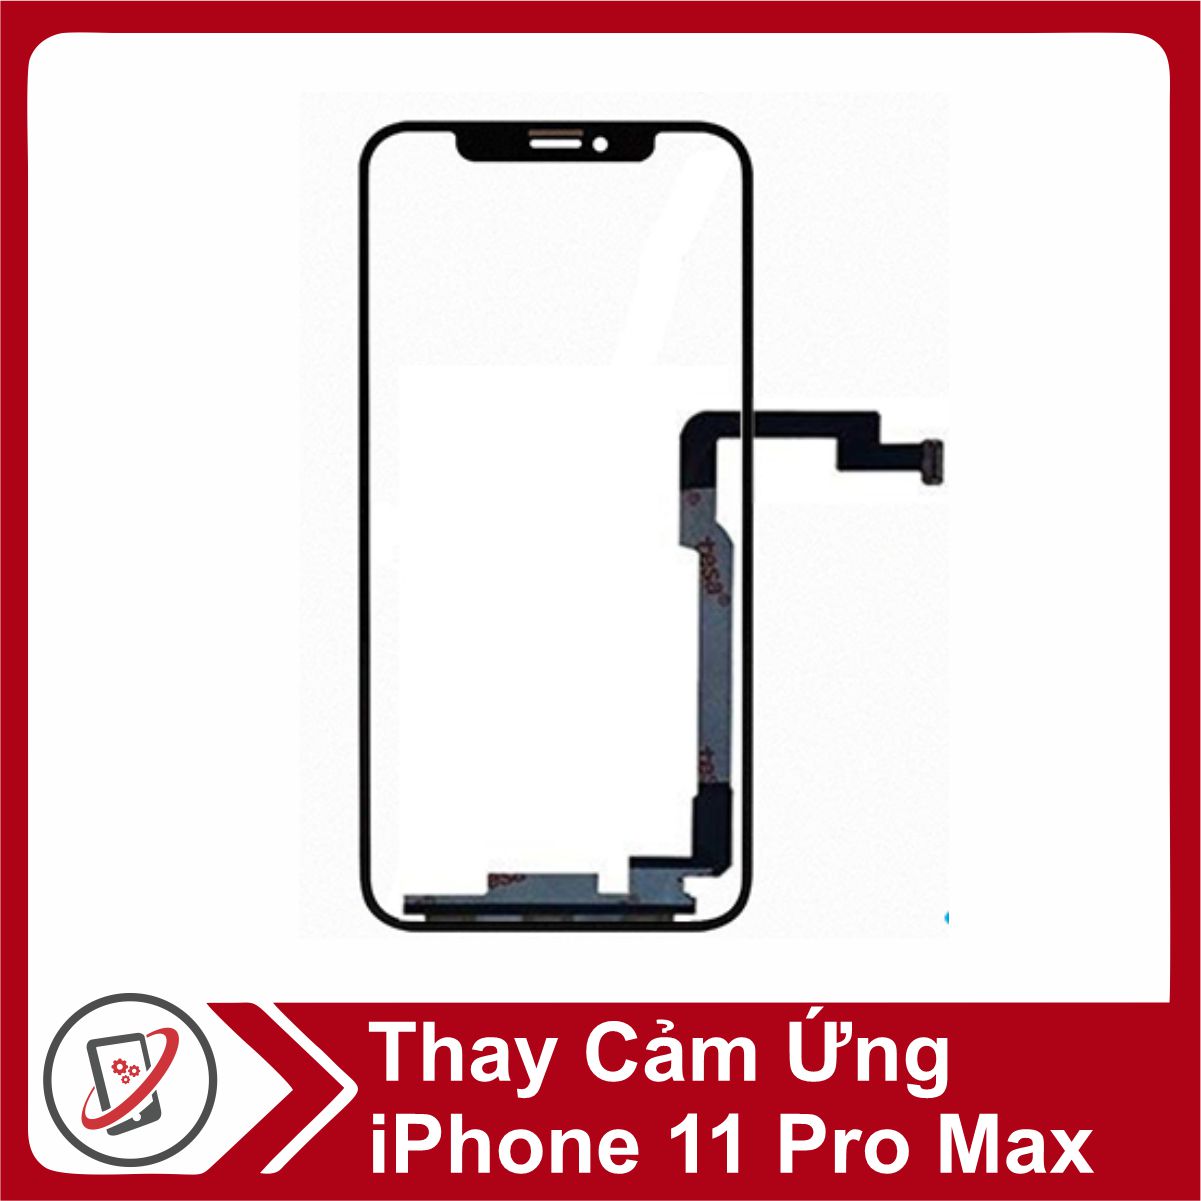 Apple iphone 11 Pro Max 256GB Cũ Chính Hãng Đẹp 98%